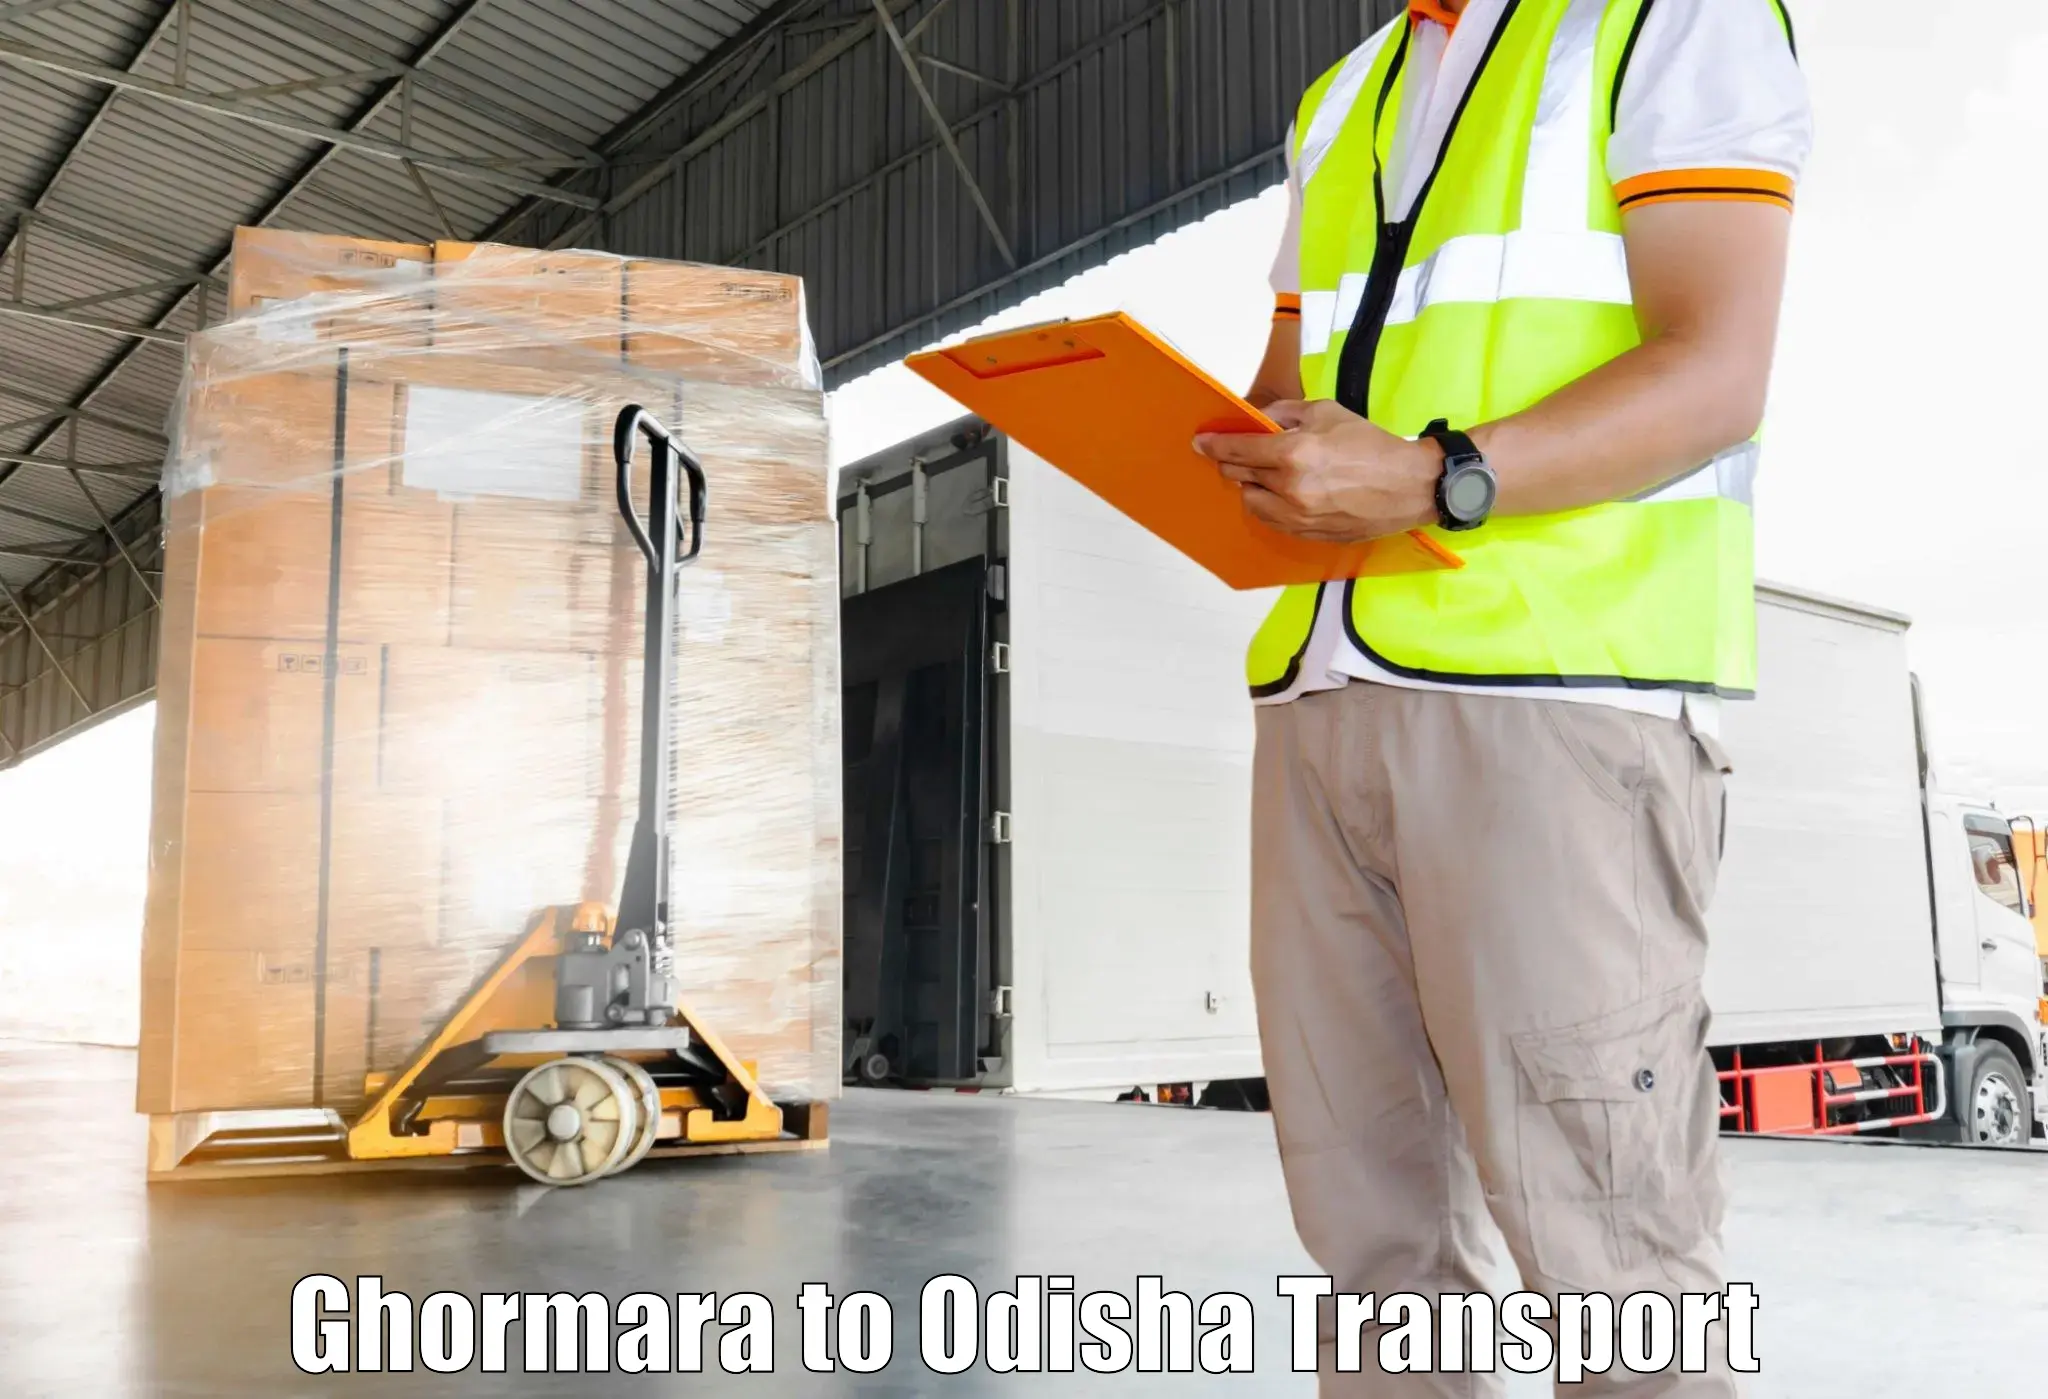 Furniture transport service Ghormara to Nayagarh